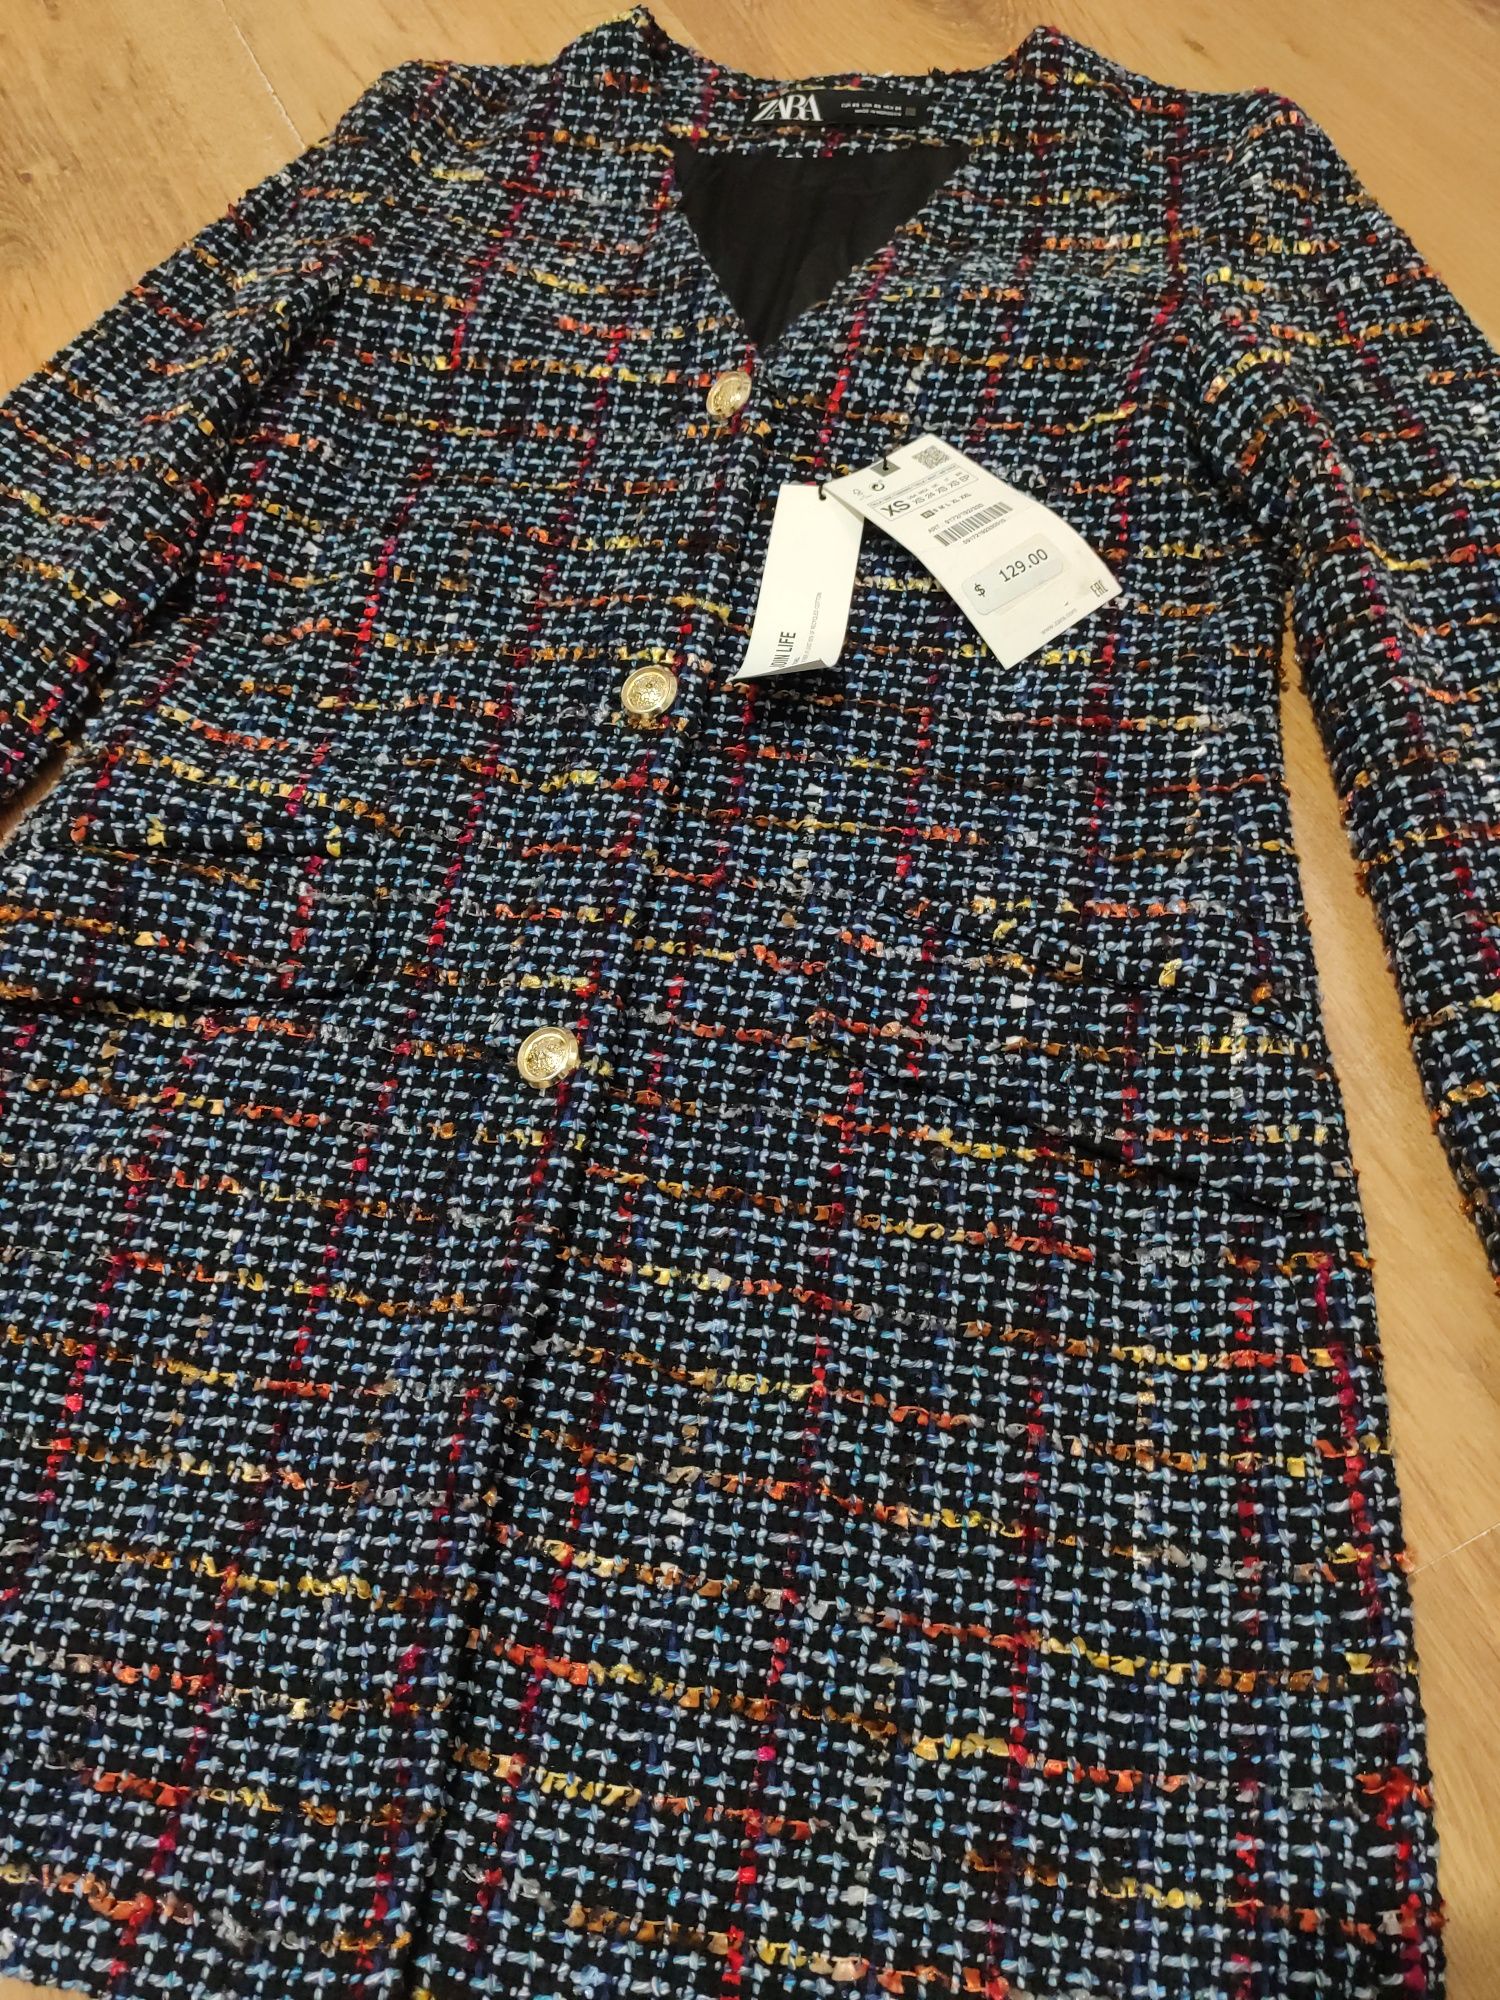 Jachetă / blazer lung de damă Zara mărimea XS